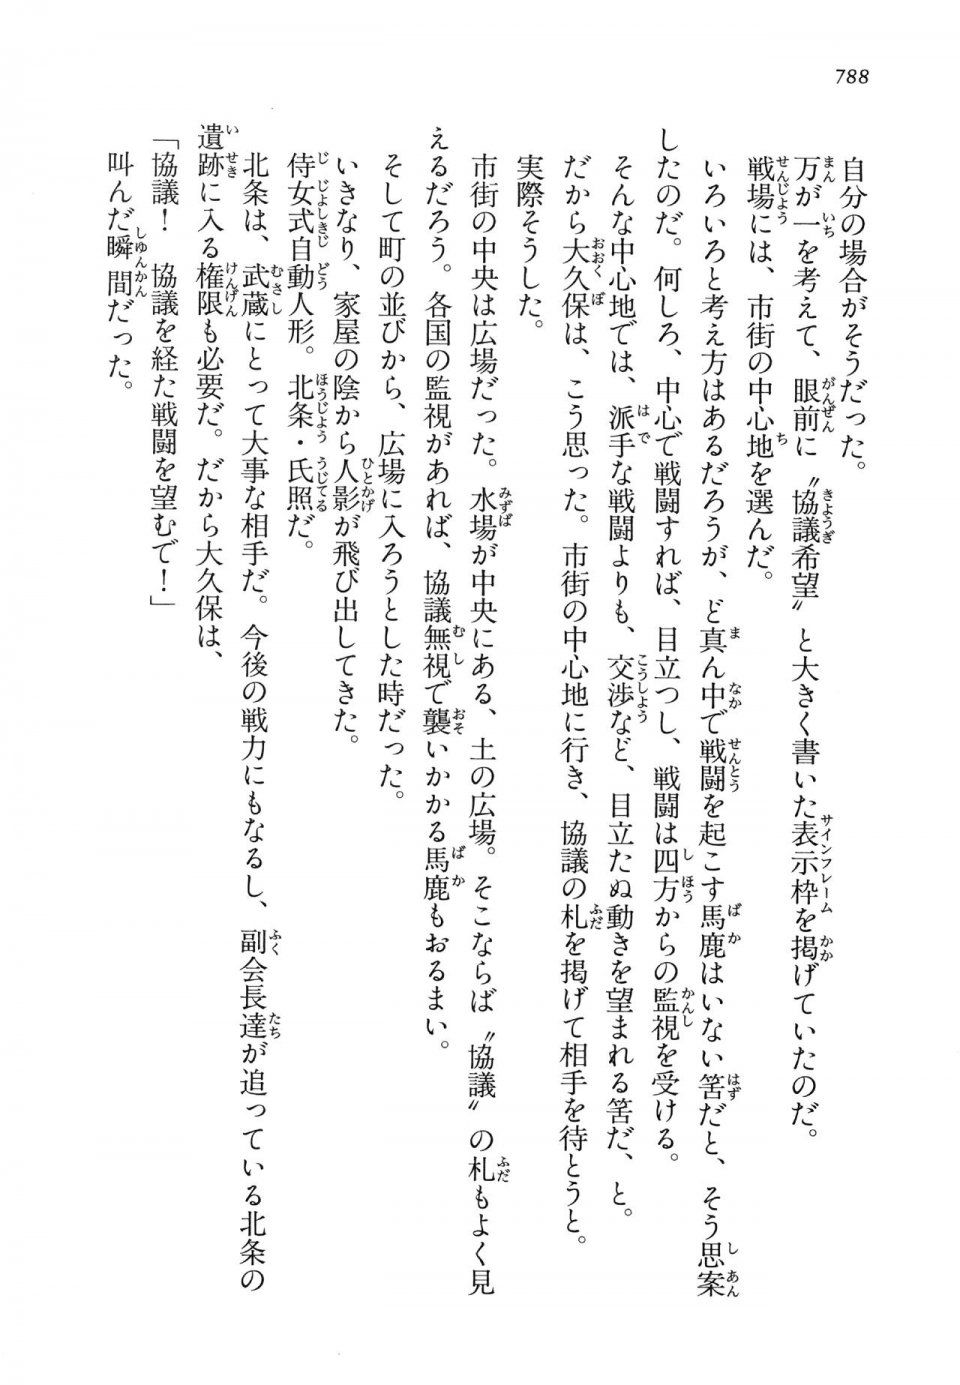 Kyoukai Senjou no Horizon LN Vol 14(6B) - Photo #788